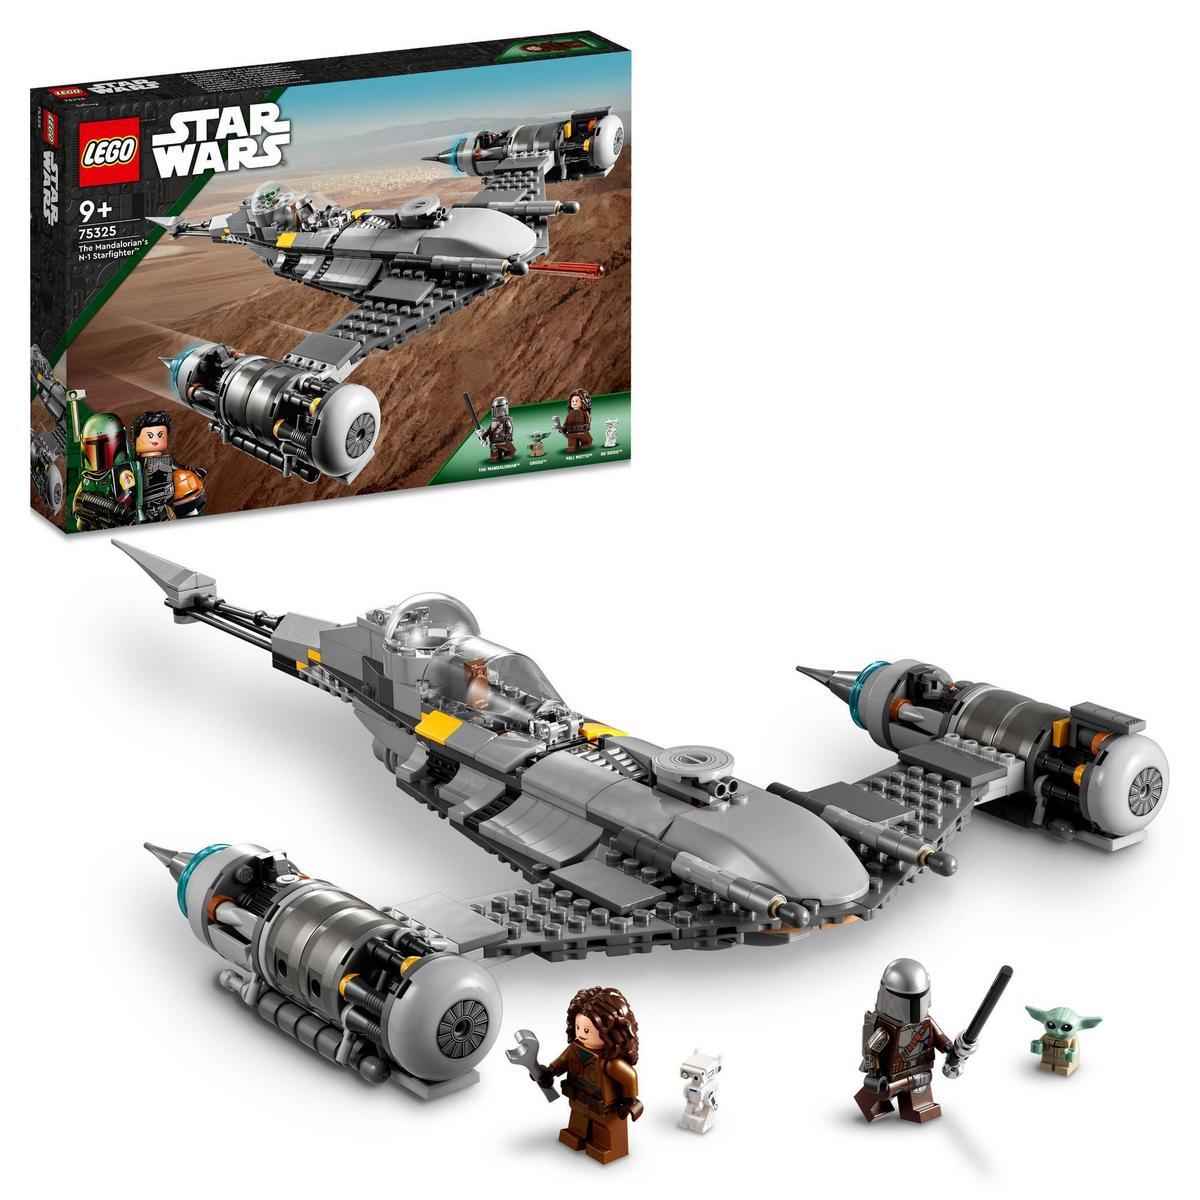 Juego LEGO Star Wars: El Libro de Boba Fett Caza Estelar N-1 de The Mandalorian por sólo 51,99€ ¡¡20% de descuento!!